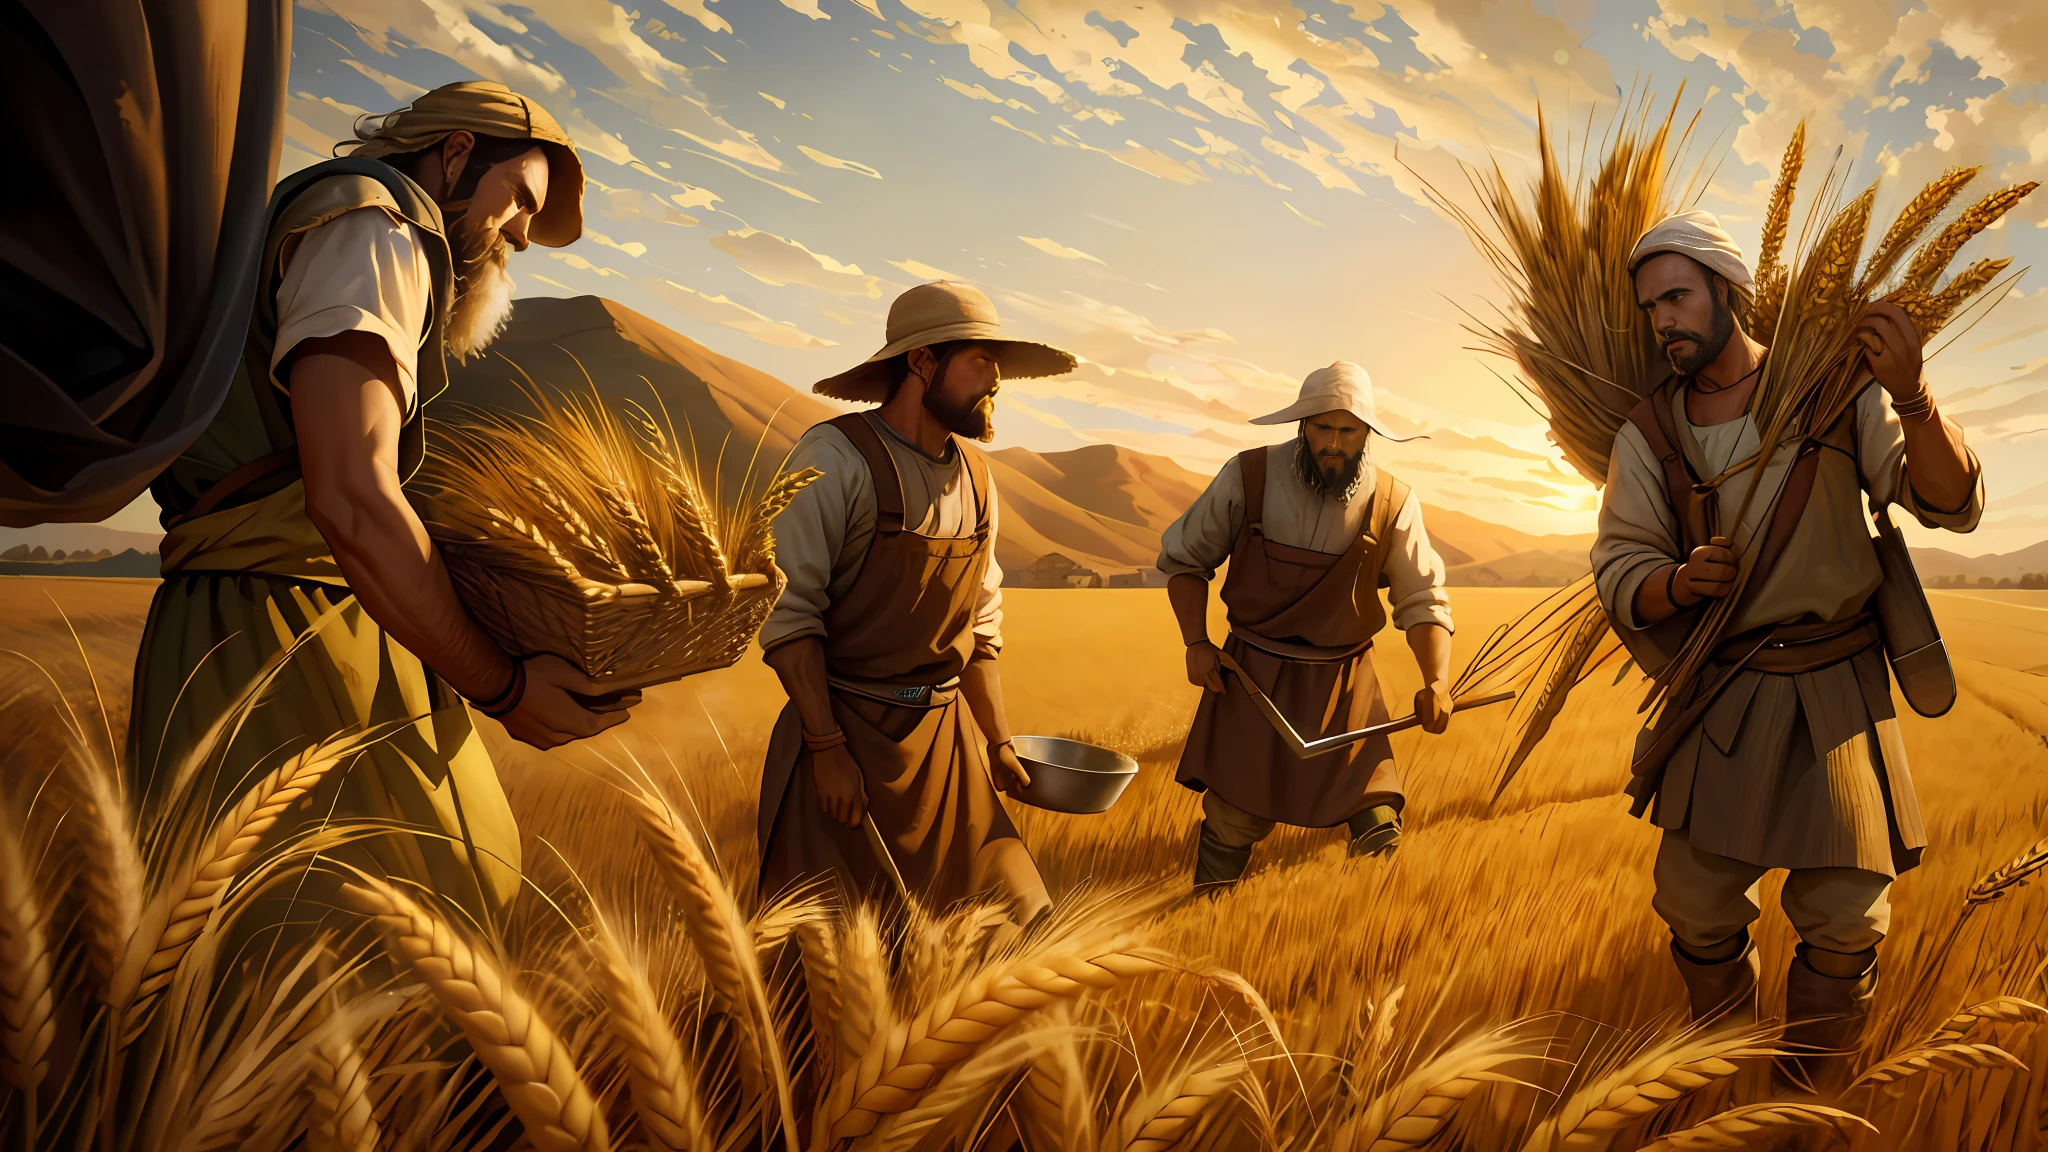 картина маслом, трое мужчин собирают пшеницу в поле, посадка пшеницы, эпическое библейское представление, 8к ухд, кинематографическое освещение, высокое качество, --s2